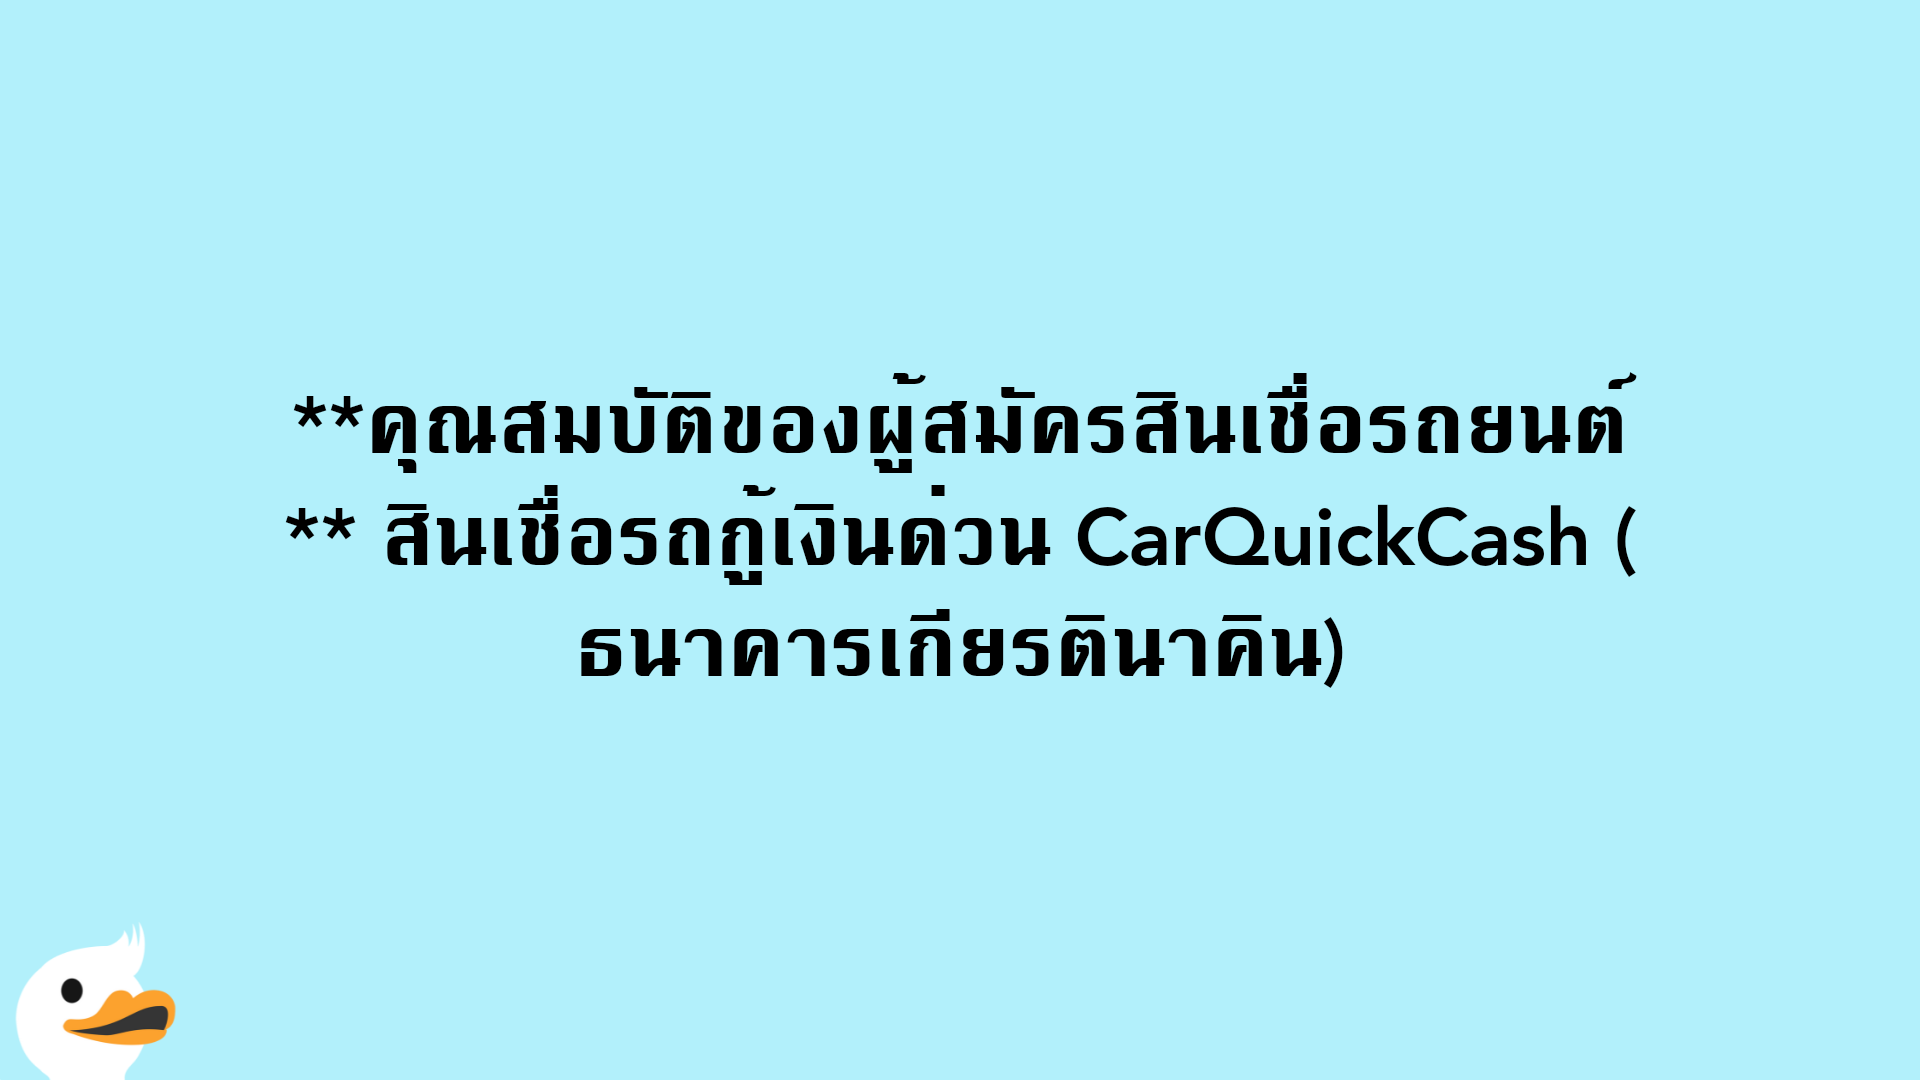 คุณสมบัติของผู้สมัครสินเชื่อรถยนต์ สินเชื่อรถกู้เงินด่วน CarQuickCash (ธนาคารเกียรตินาคิน)